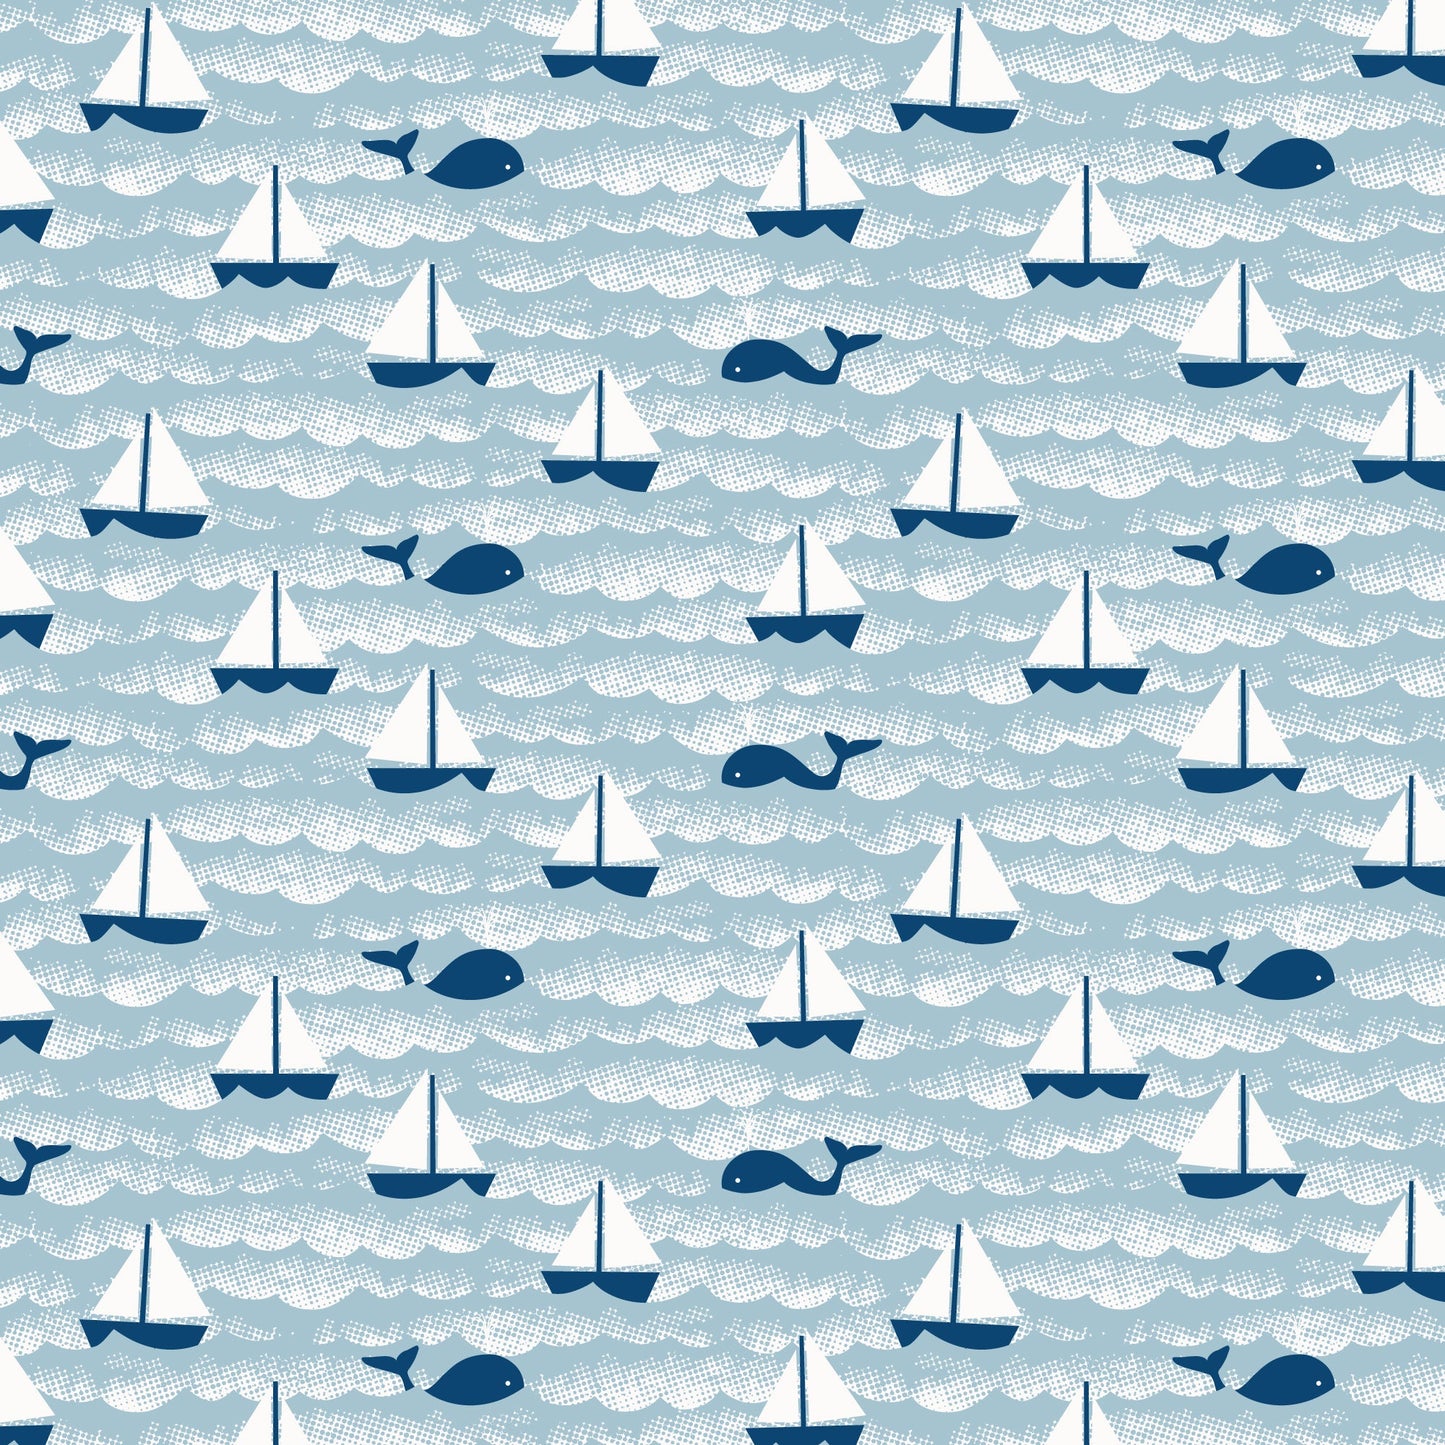 Bubble Romper - Sailboats Ocean Blue & Navy